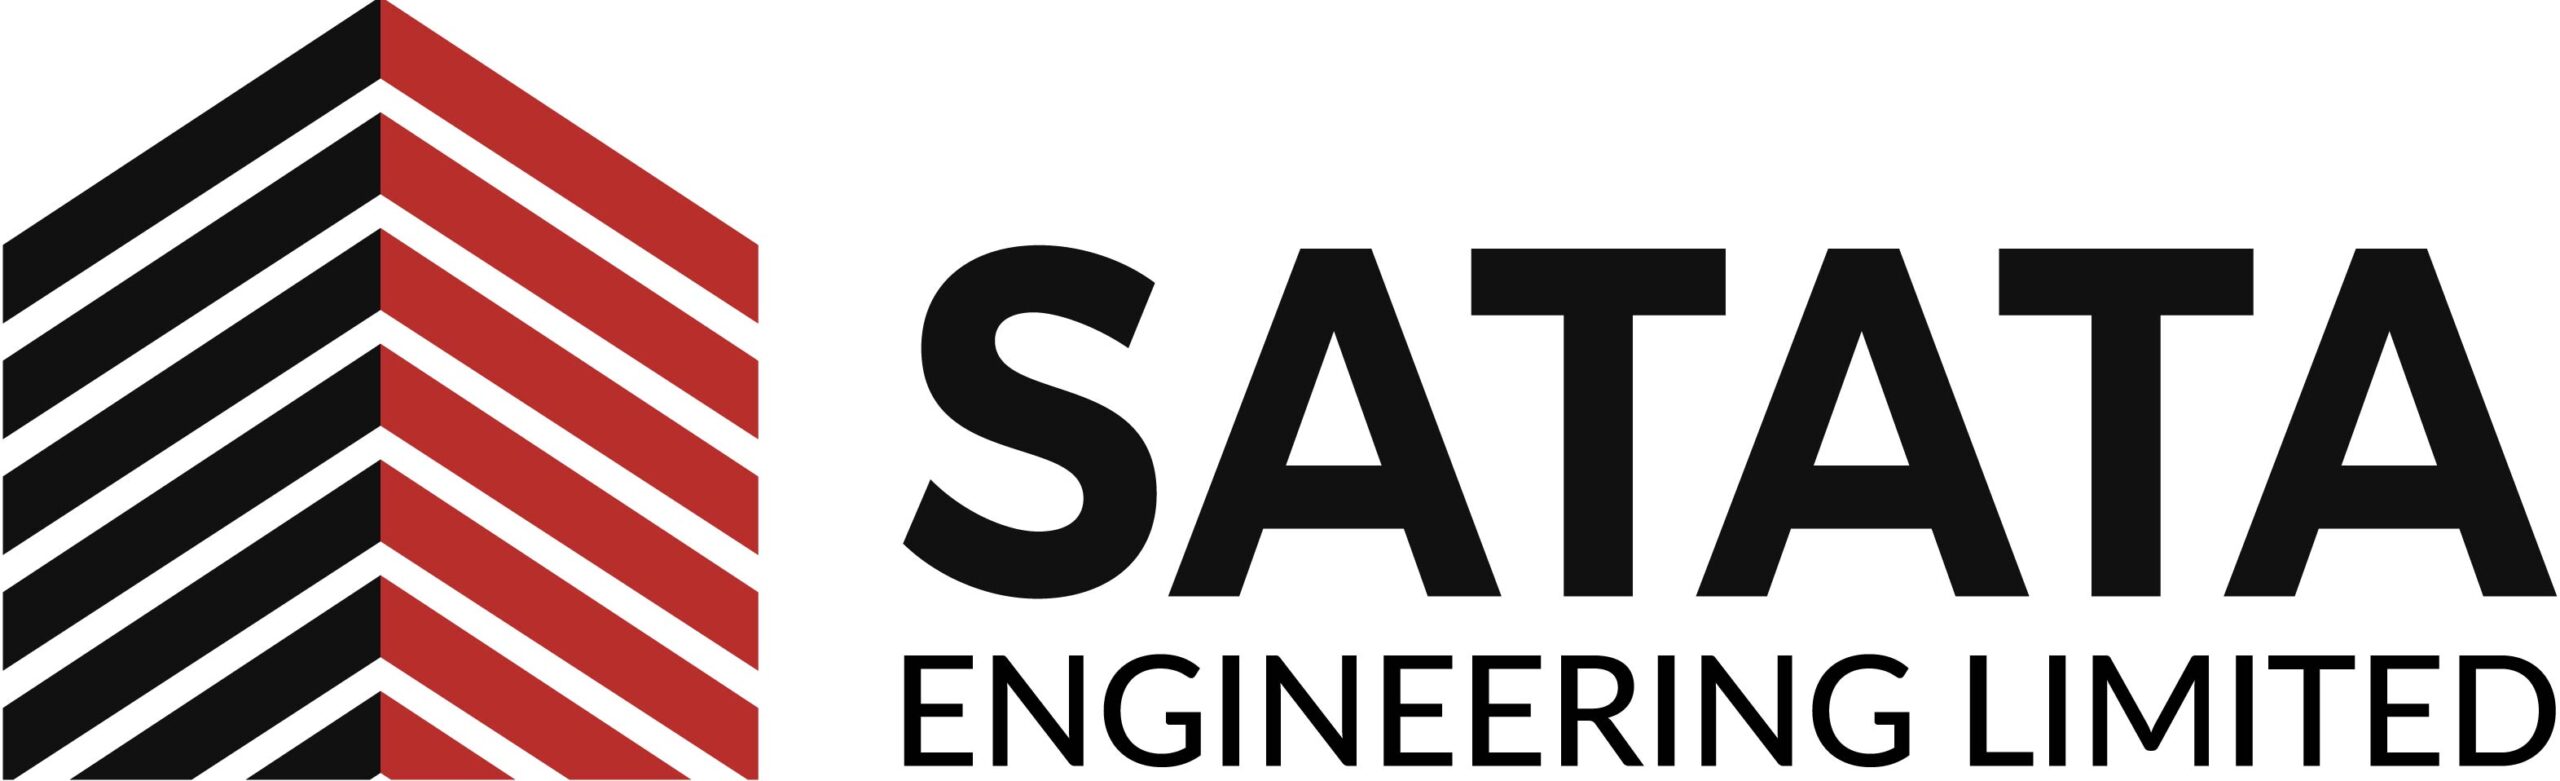 Satata Engineering